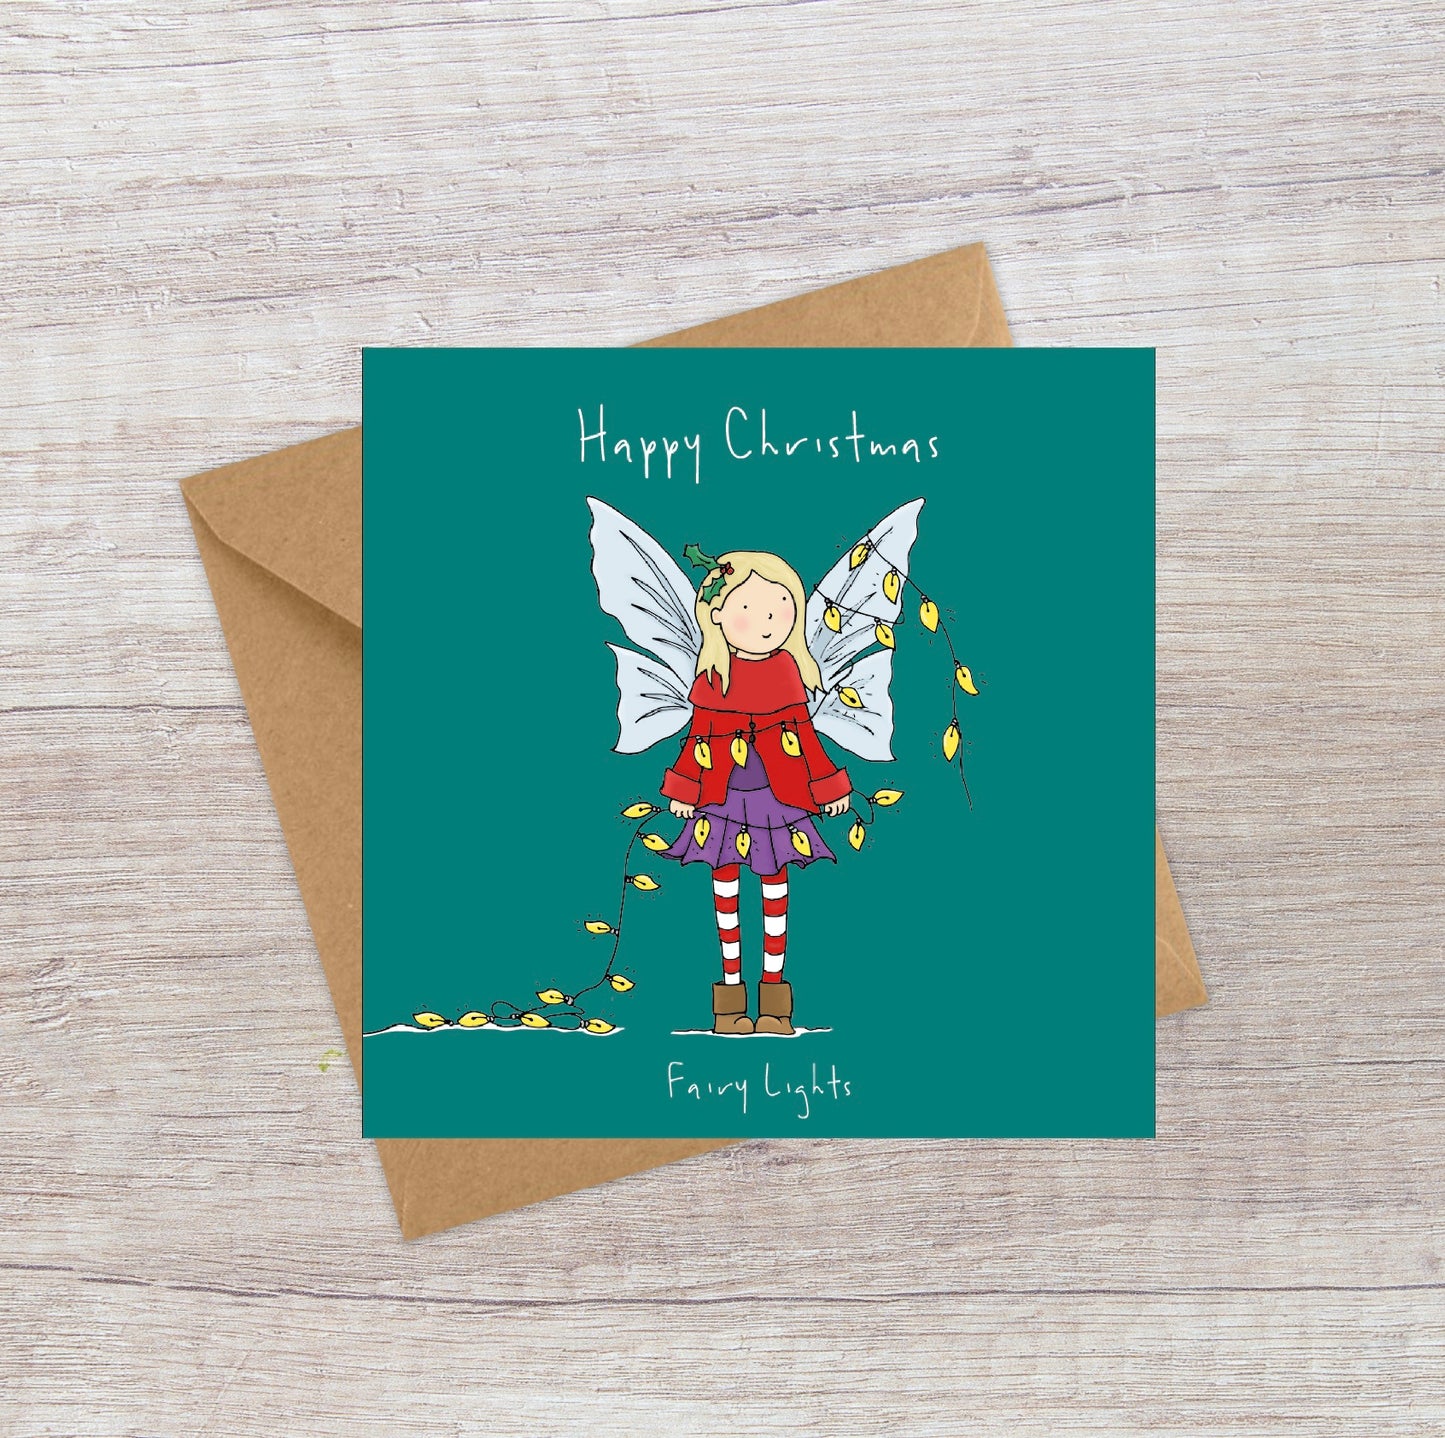 Fairy Lights Christmas card